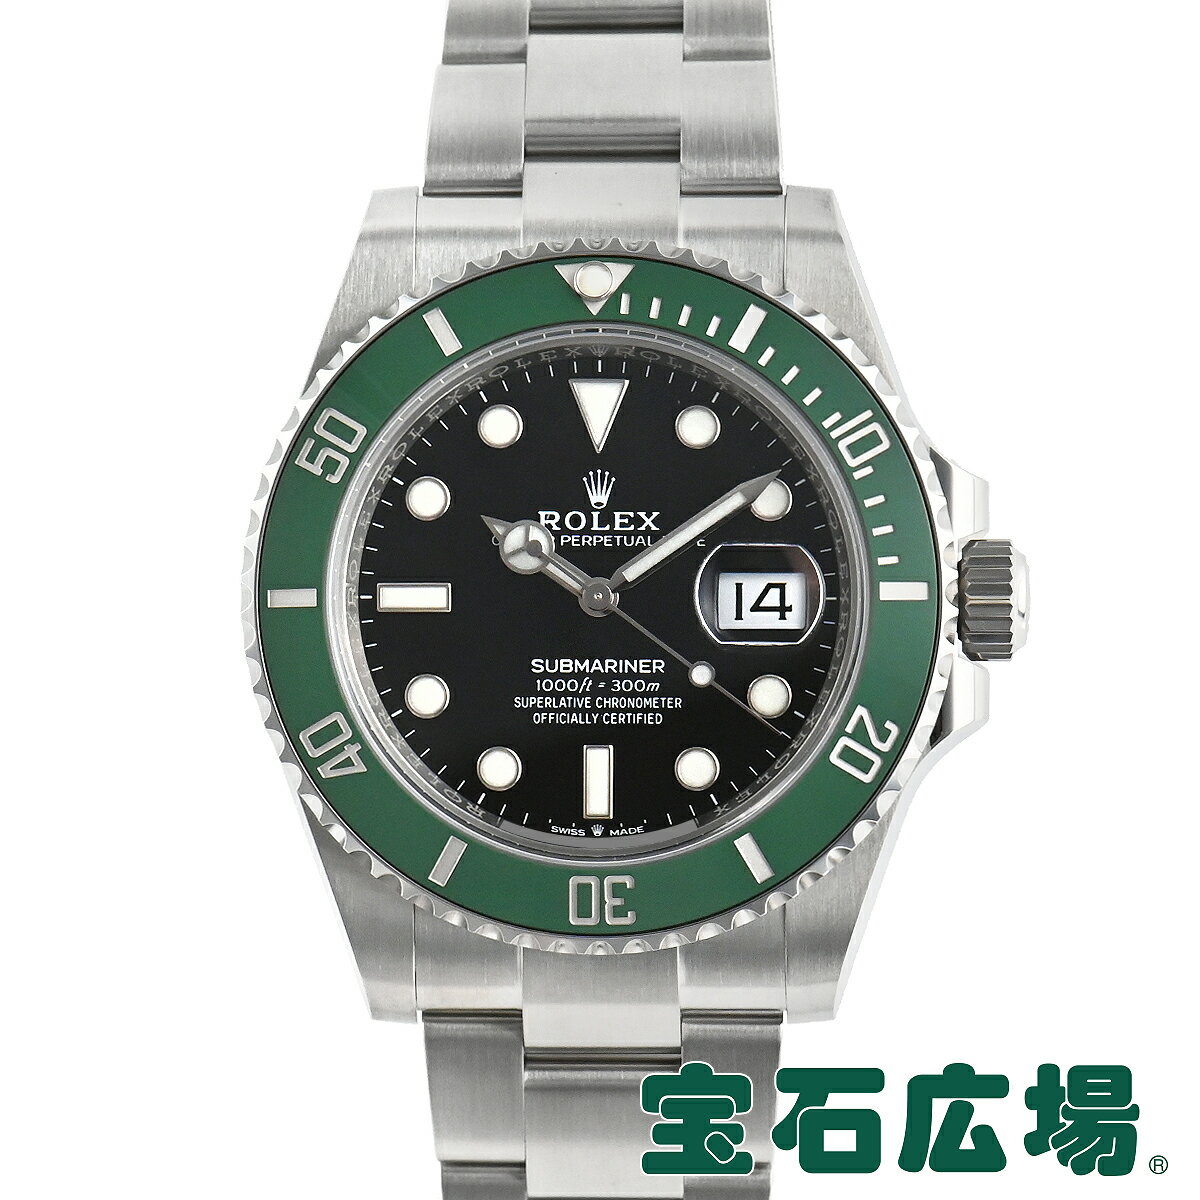 サブマリーナ 腕時計 ロレックス（メンズ） ロレックス ROLEX サブマリーナーデイト 126610LV【新品】メンズ 腕時計 送料無料